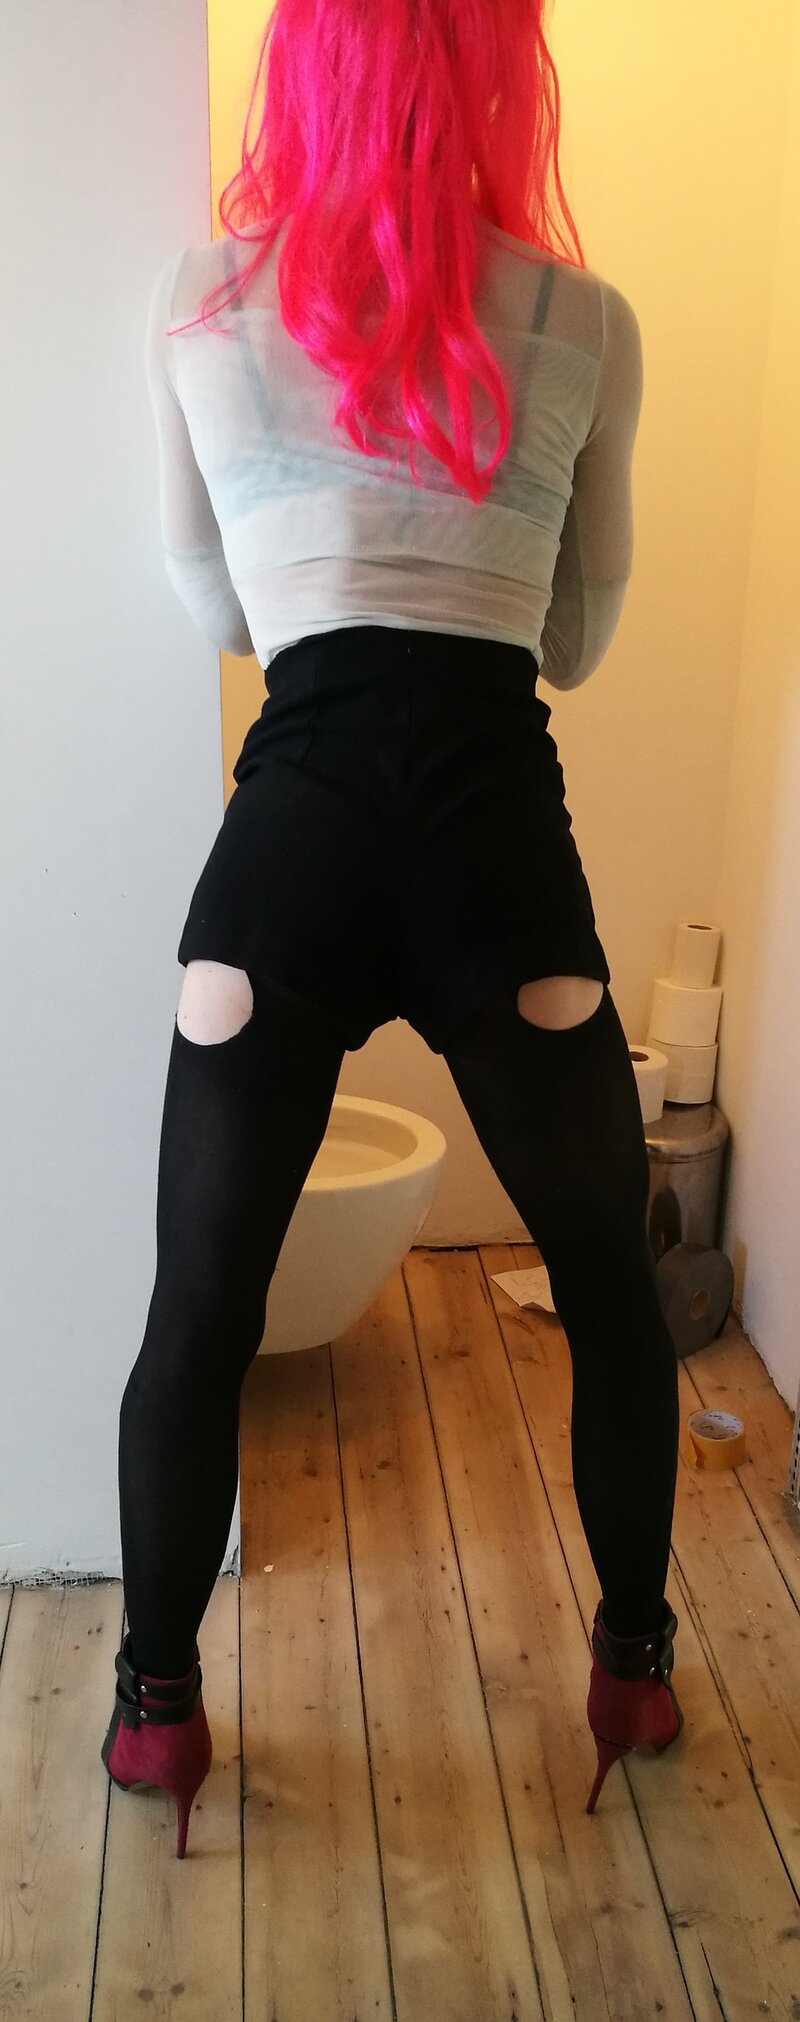 crossdresser in toilet picture